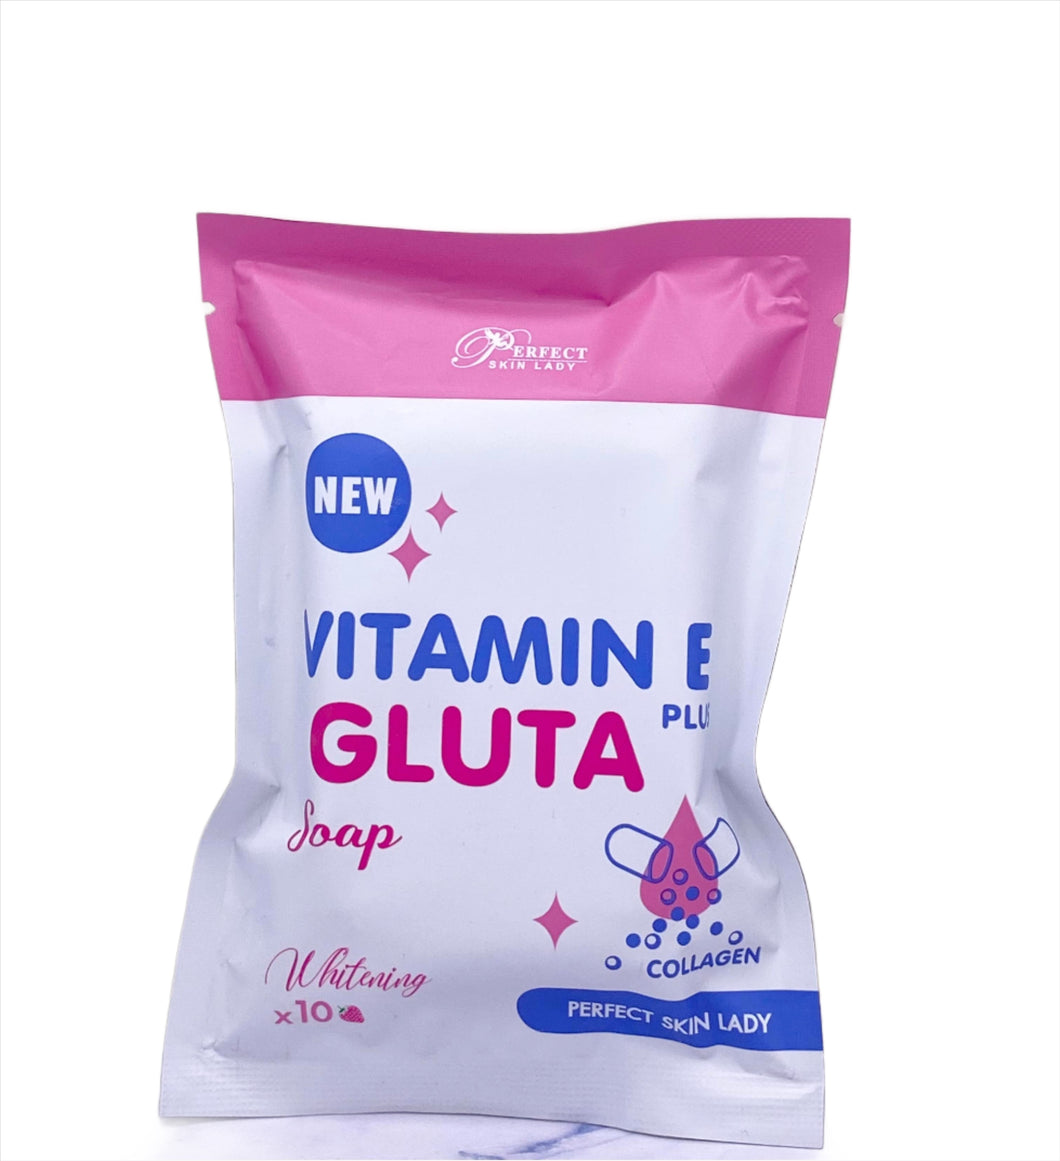 Perfect Skin Lady Vitamin E Gluta Plus Soap 80g